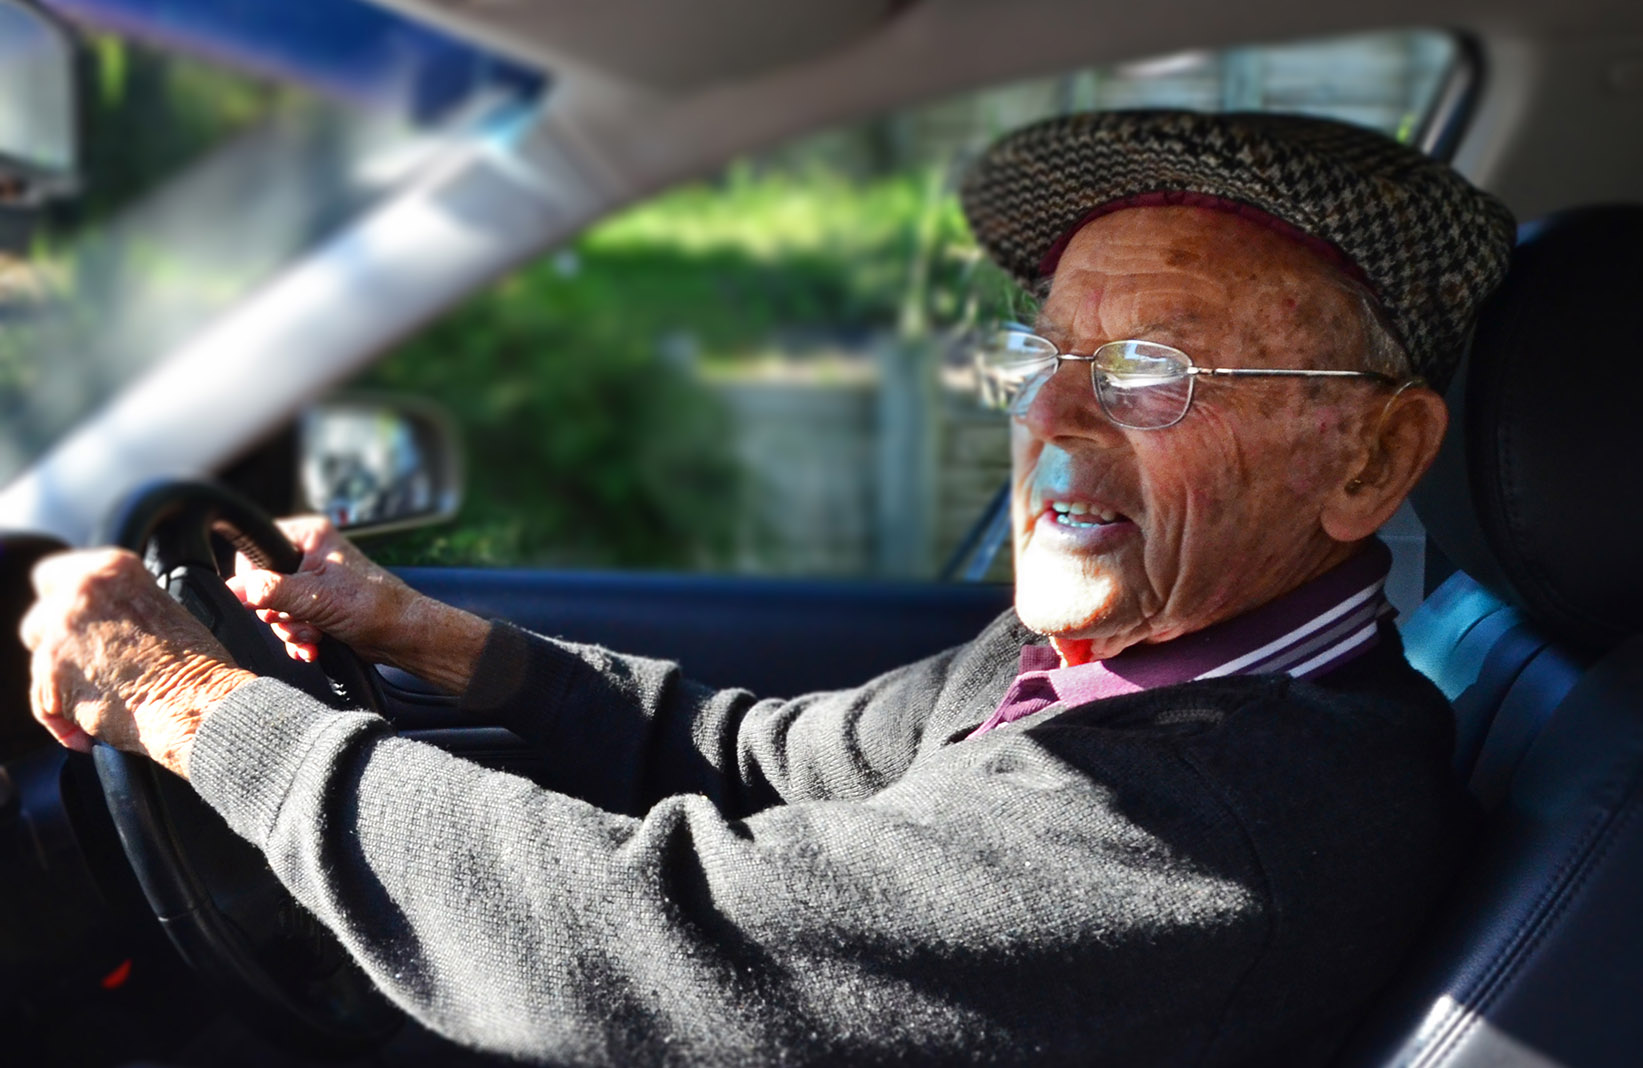 belvedere home care safe driving for seniors.jpg